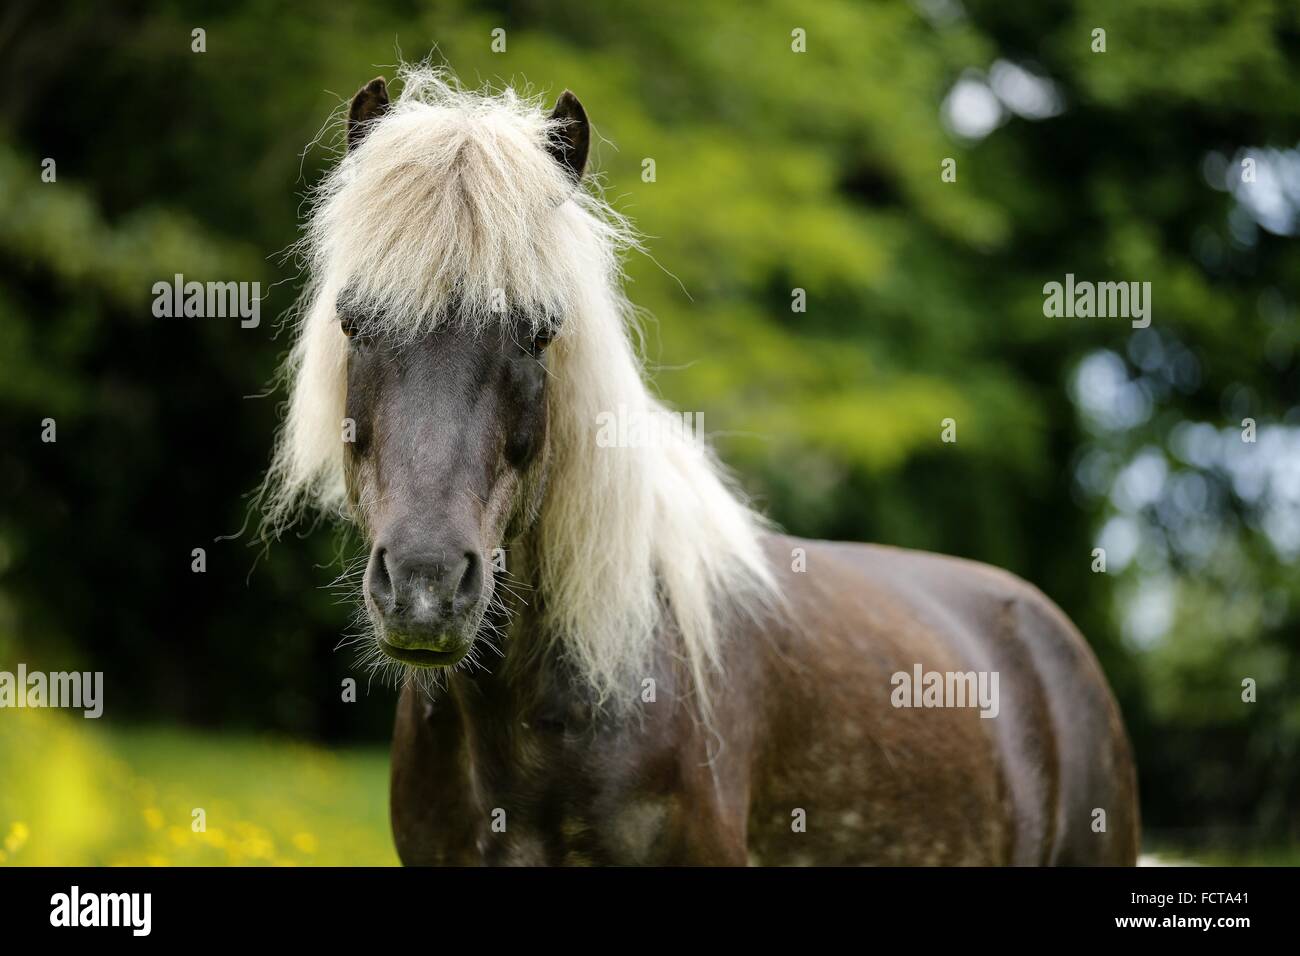 Icelandic horse Portrait Stock Photo